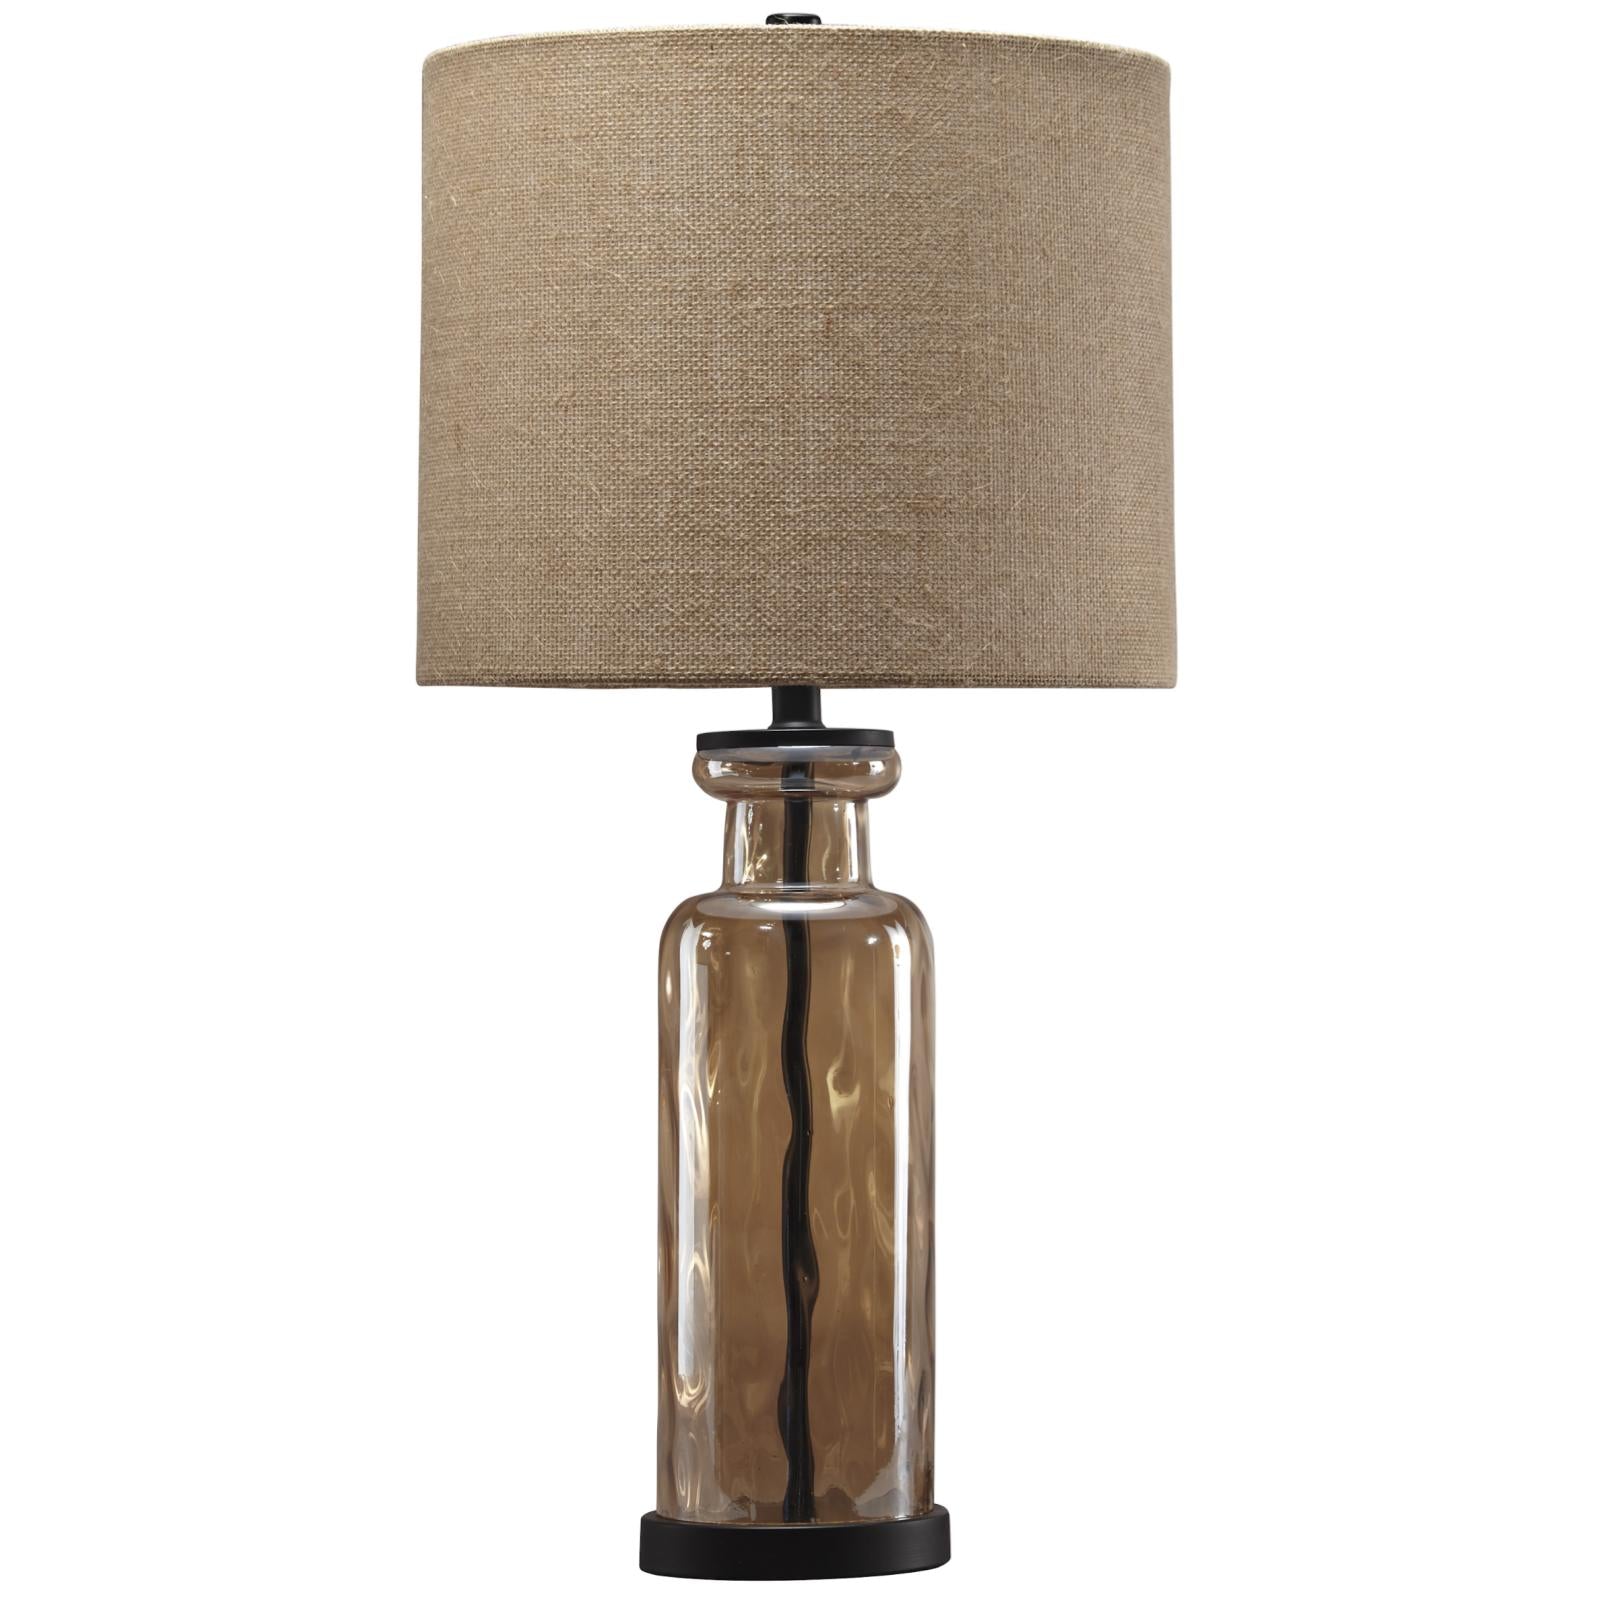 Laurentia Glass Table Lamp, Lamp, Ashley Furniture - Adams Furniture